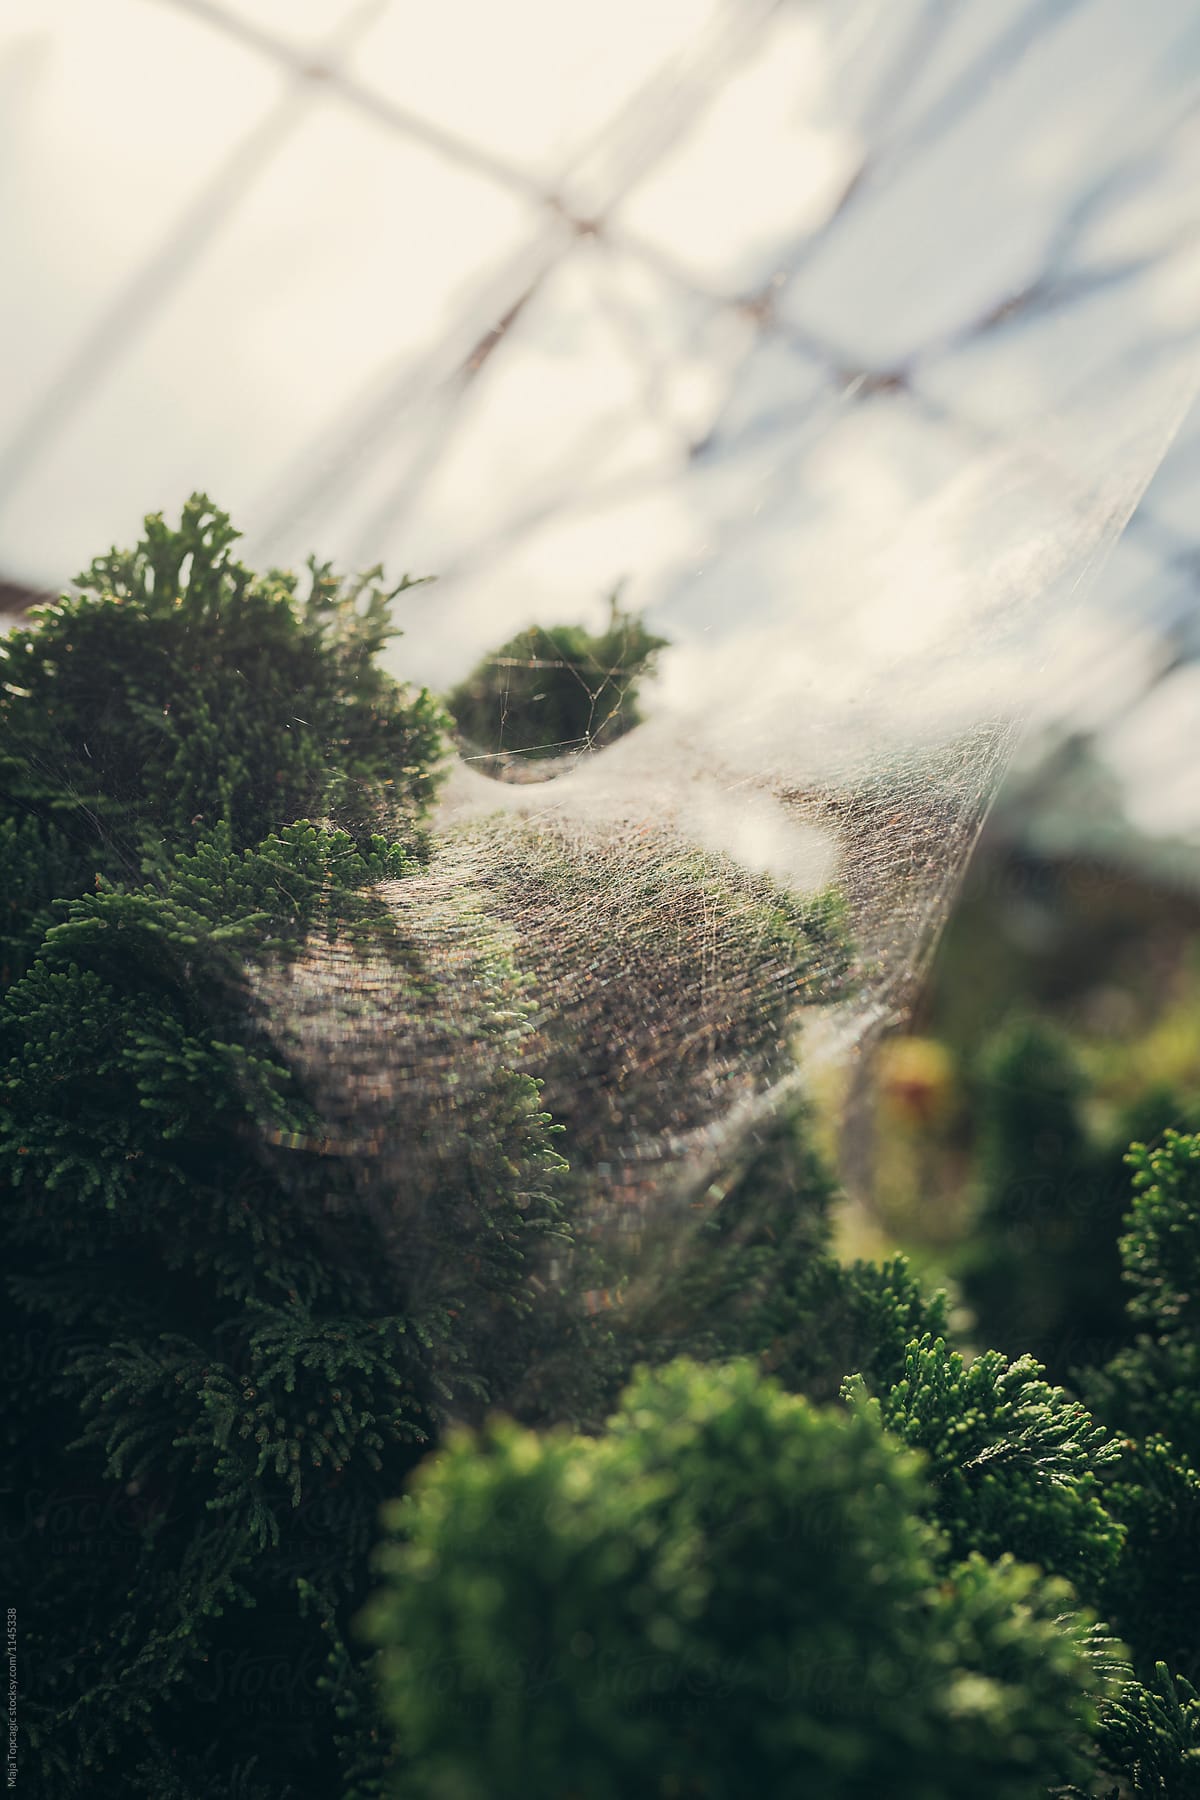 Spider web in a botanical garden